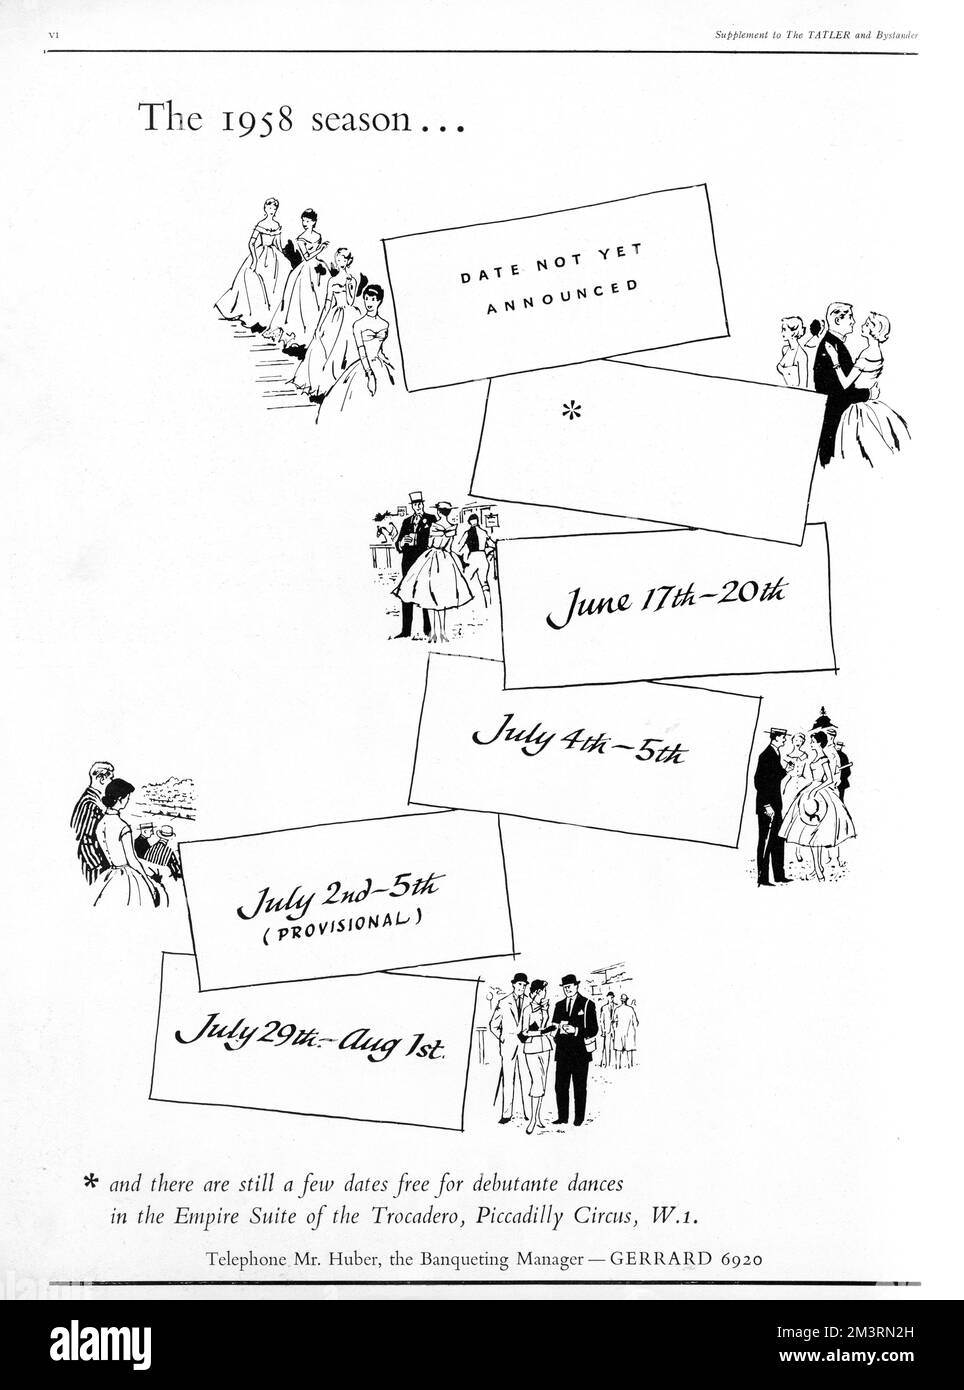 Werbung des Trocadero am Piccadilly Circus, in der die Daten hervorgehoben werden, an denen die Empire Suite noch für Debütantentänze zur Verfügung stand. Datum: 1958 Stockfoto